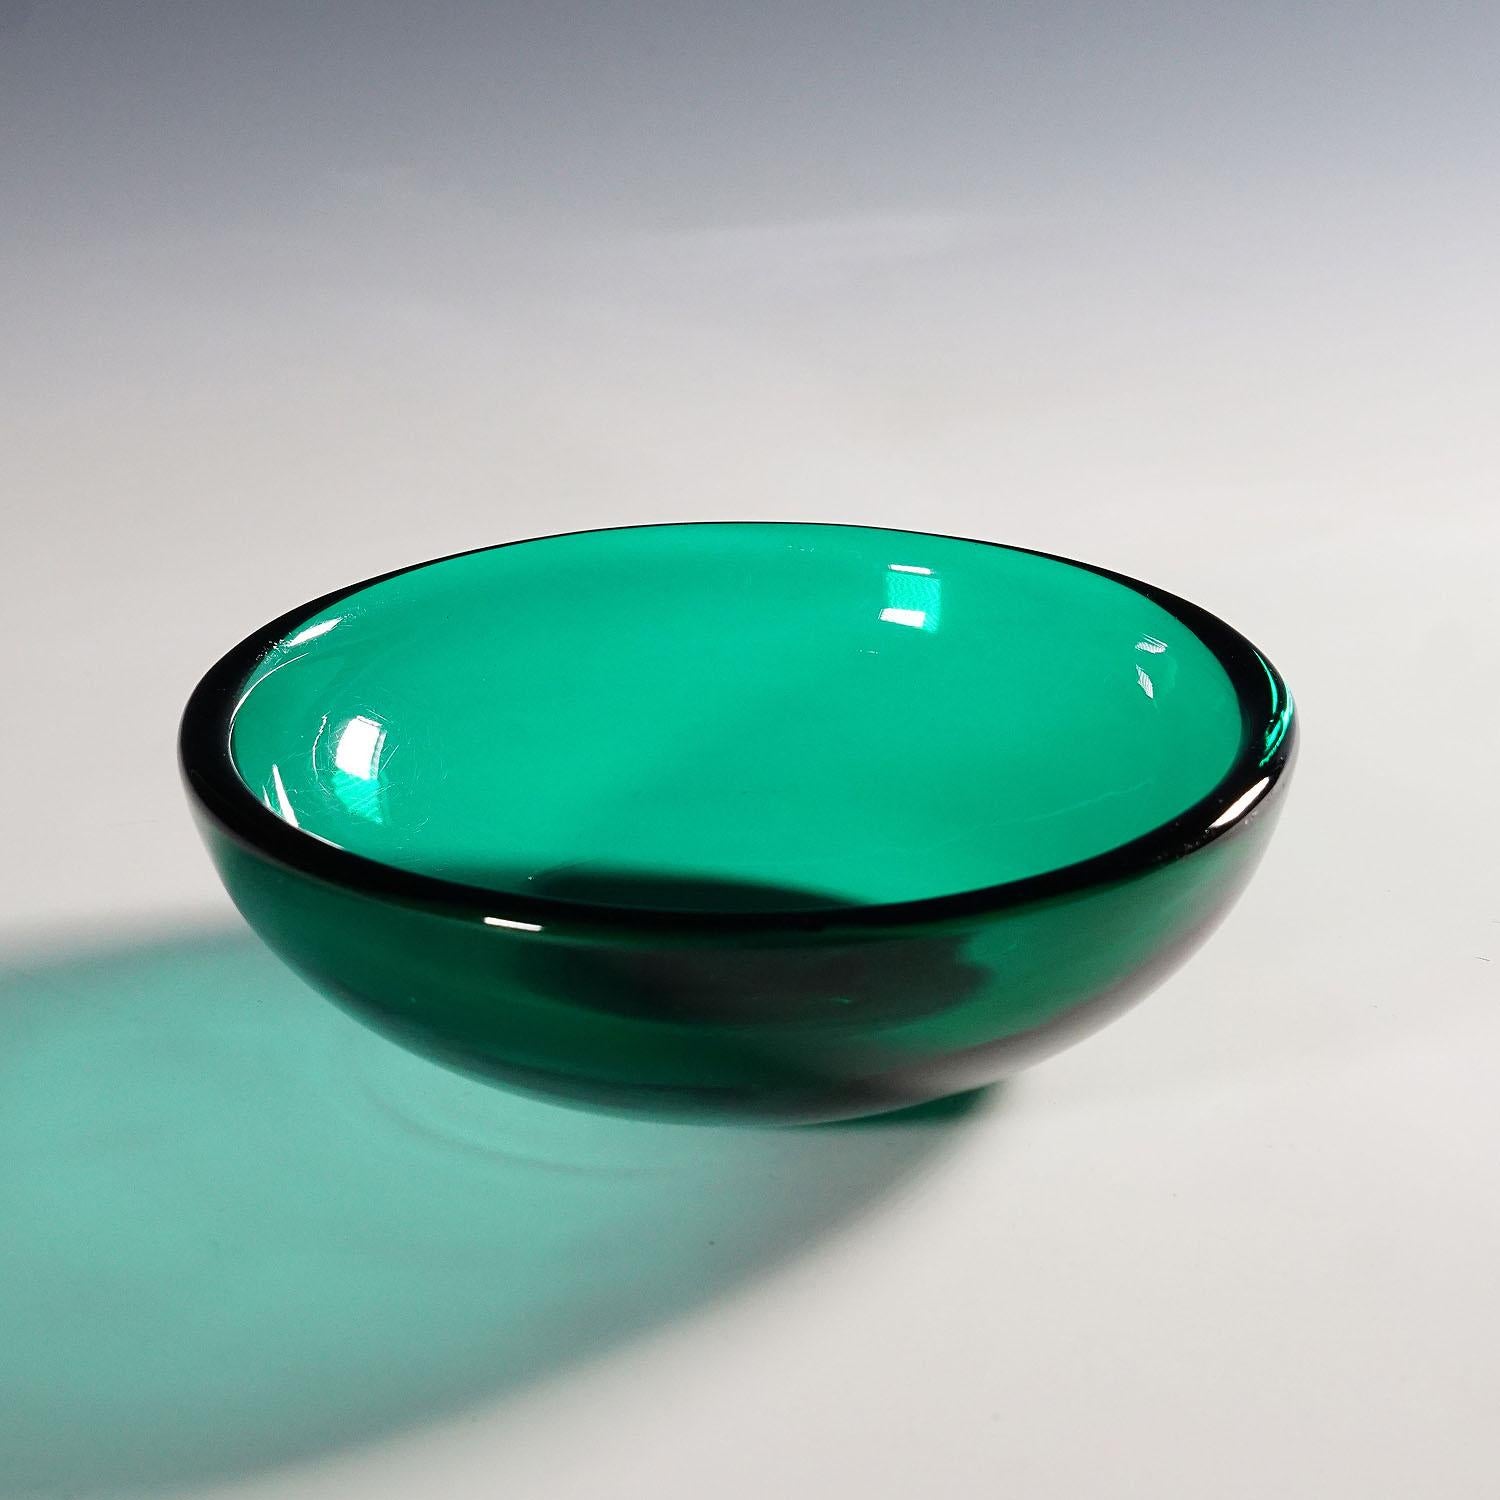 Small dish in green glass, Venini Murano ca. 1930s

A small glass dish in transparent green glass, most probably designed by Carlo Scarpa. Manufactured by Venini Murano Venice ca. 1930s. Acid etched signature 